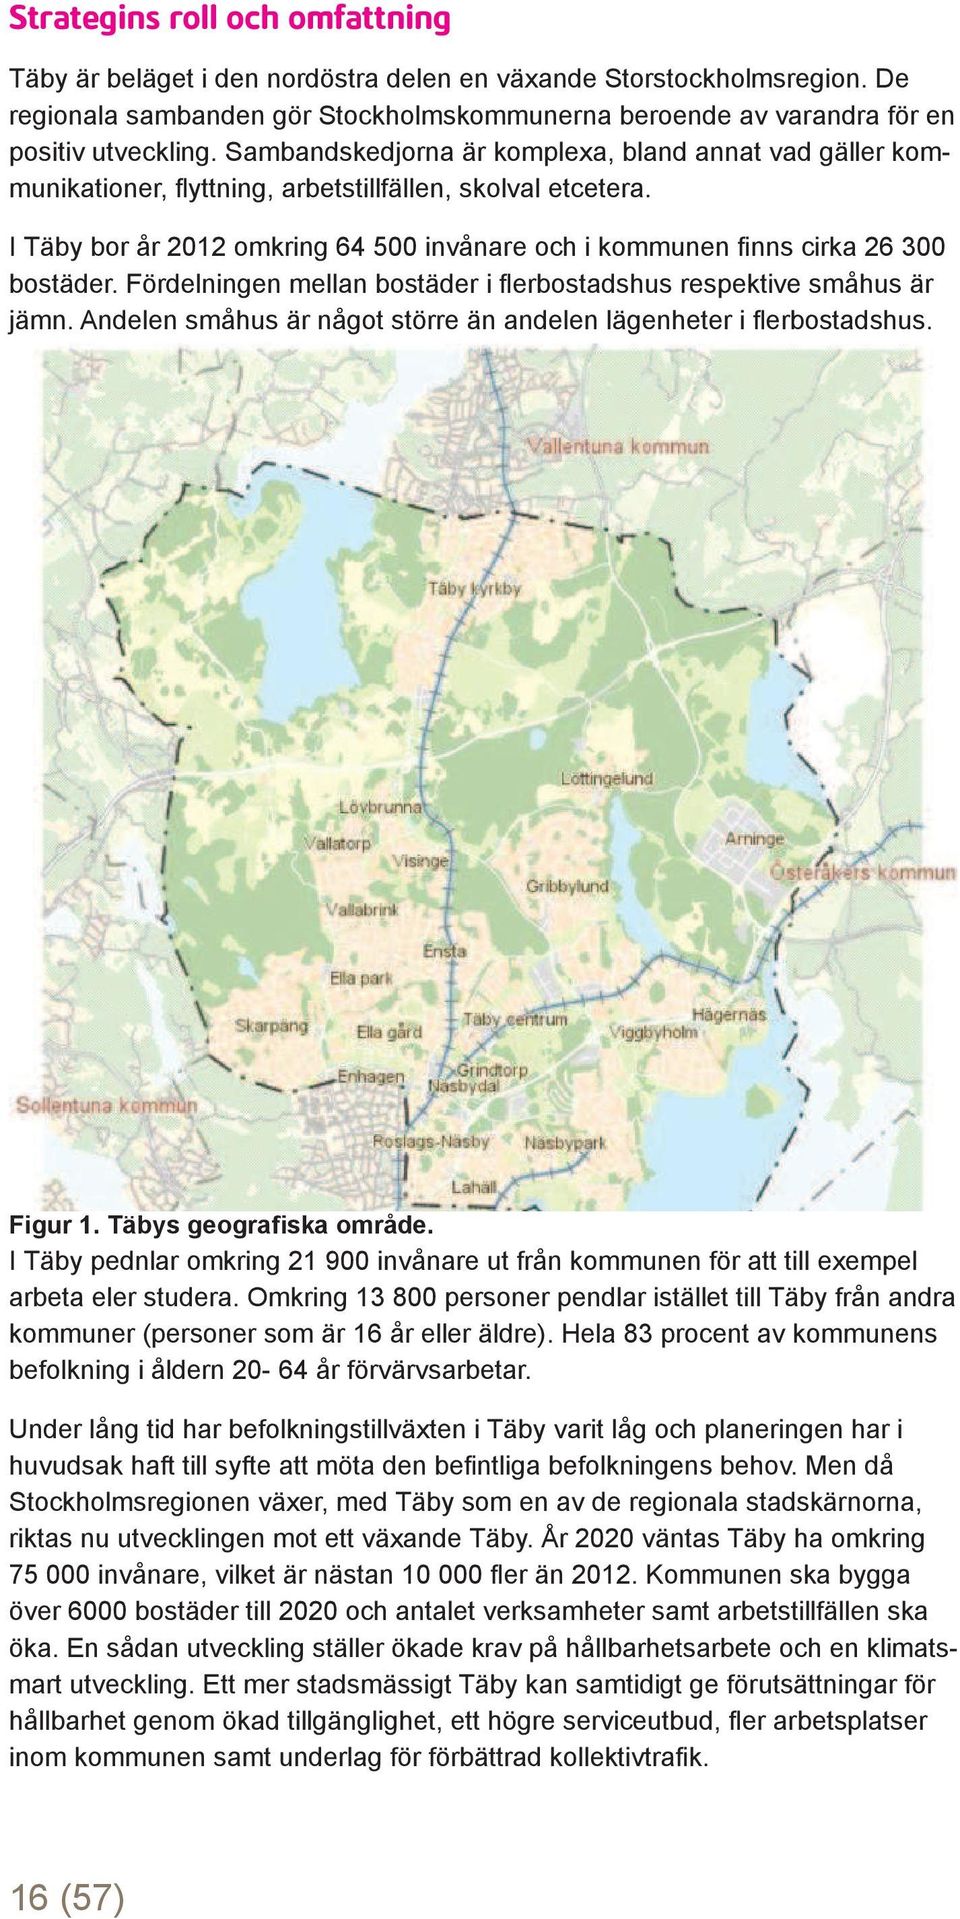 I Täby bor år 2012 omkring 64 500 invånare och i kommunen fi nns cirka 26 300 bostäder. Fördelningen mellan bostäder i fl erbostadshus respektive småhus är jämn.